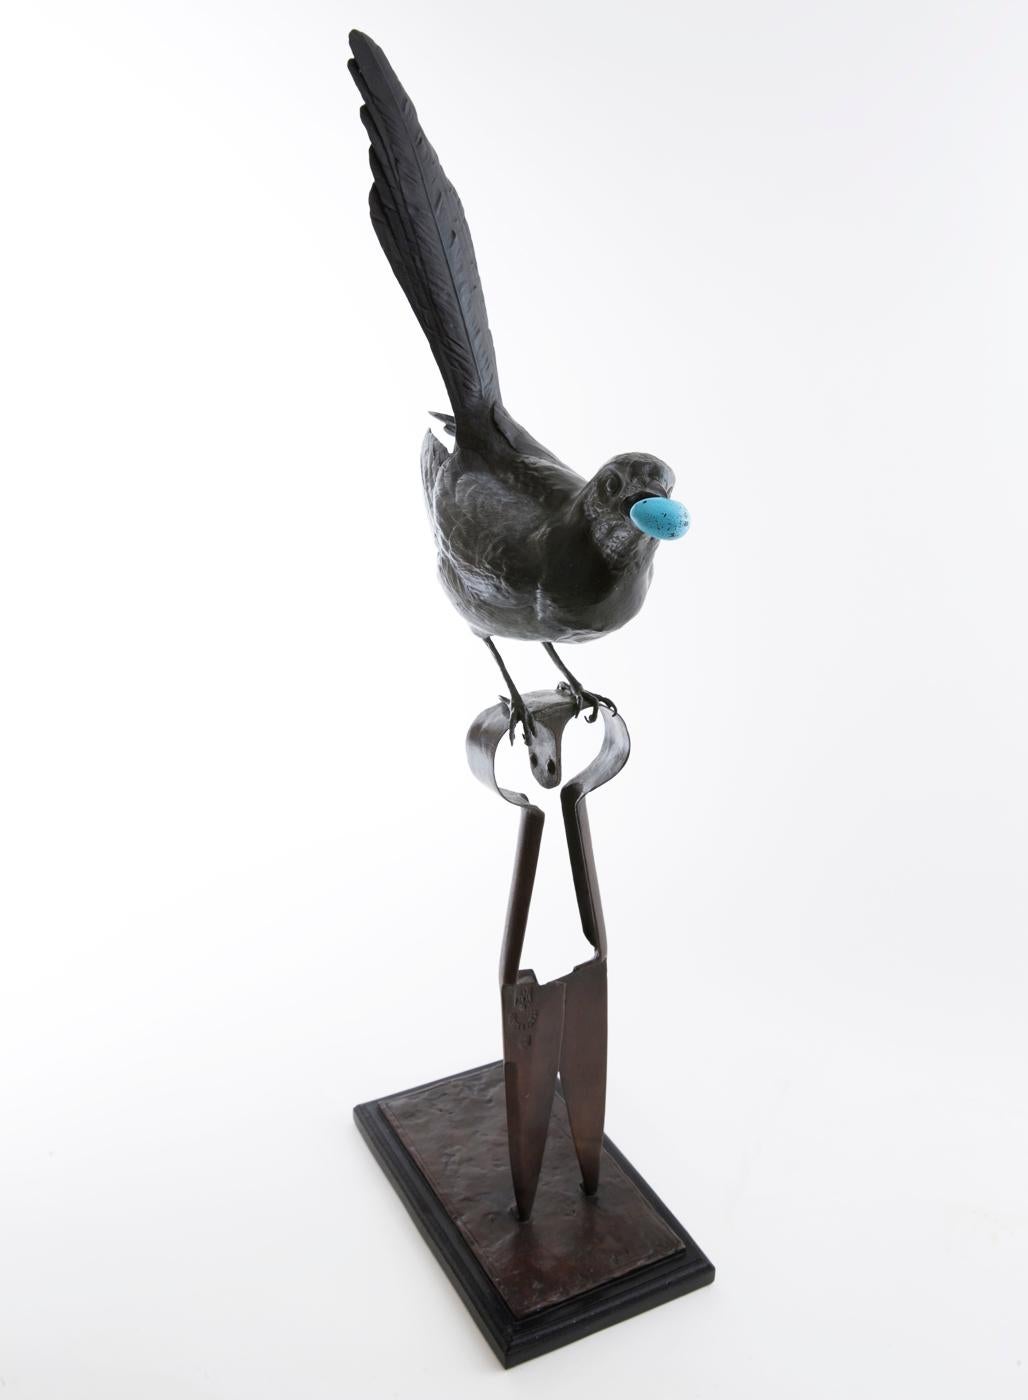 Magpie on Sheepshear - Sculpture by Bryan Hanlon